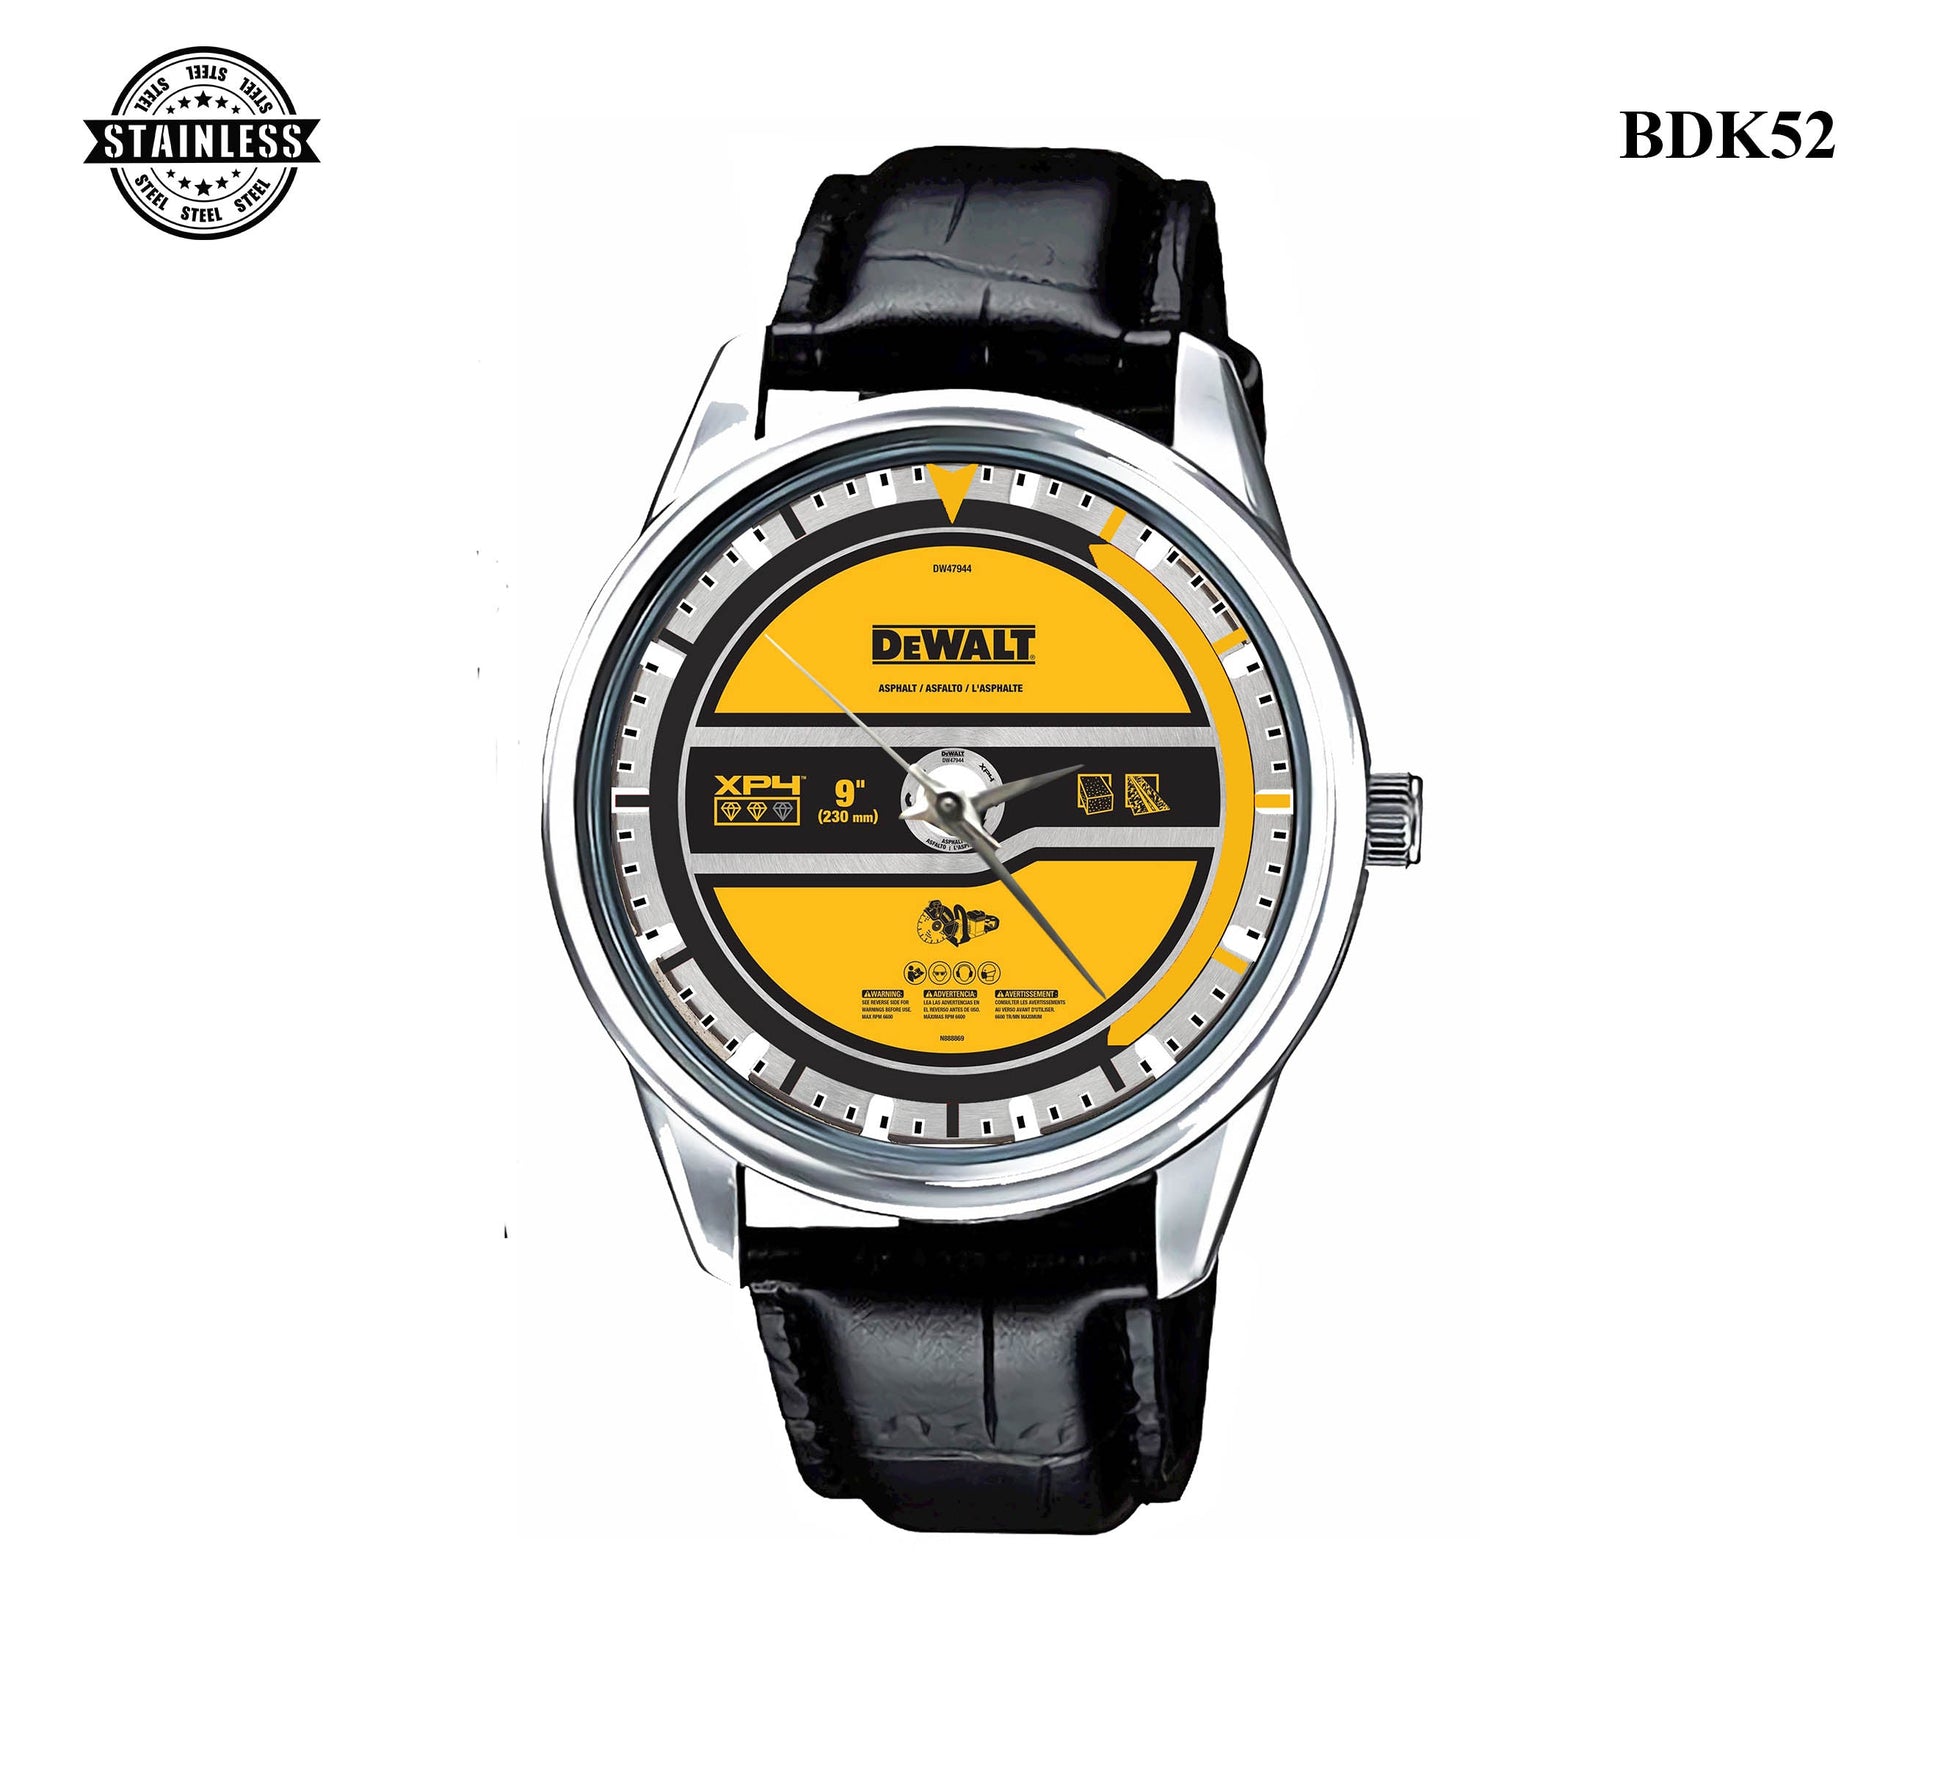 Dewalt DW47944 Watches Bdk52